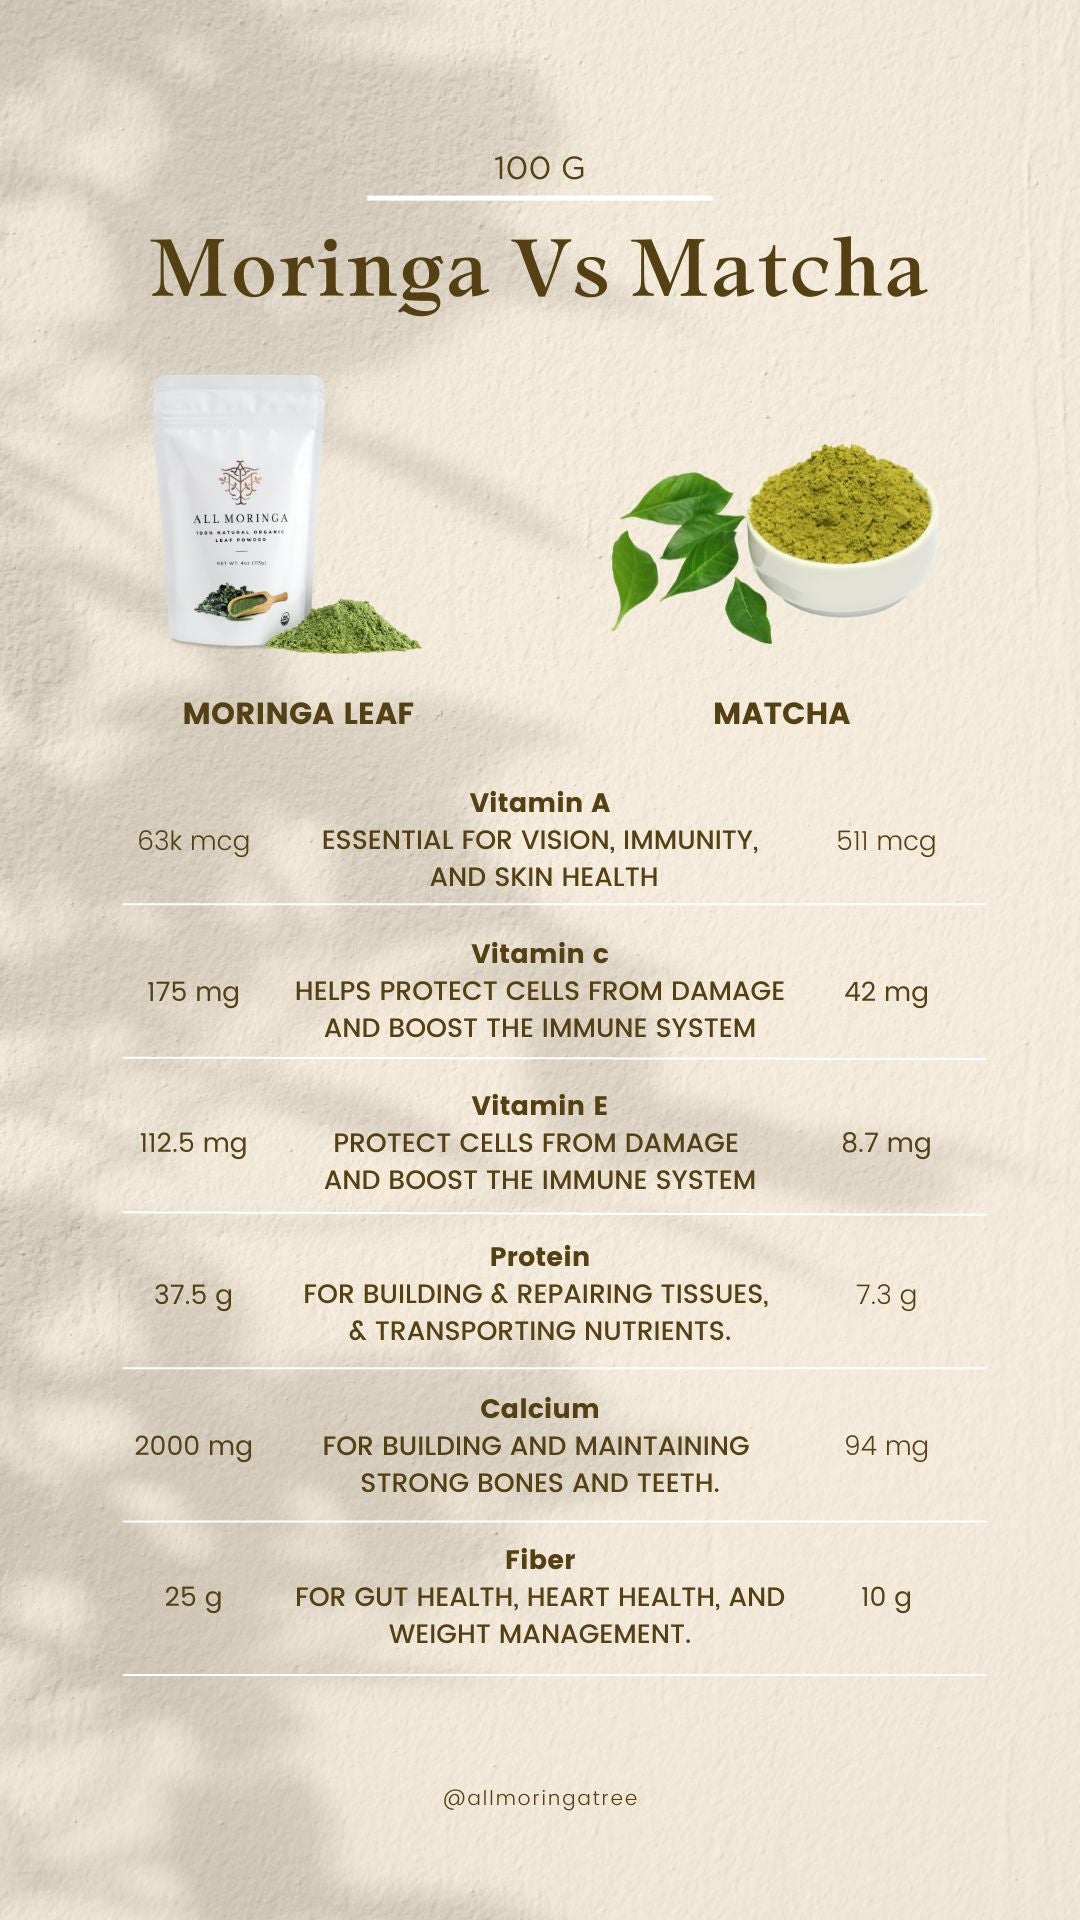 Moringa Vs Matcha benefits Infographic